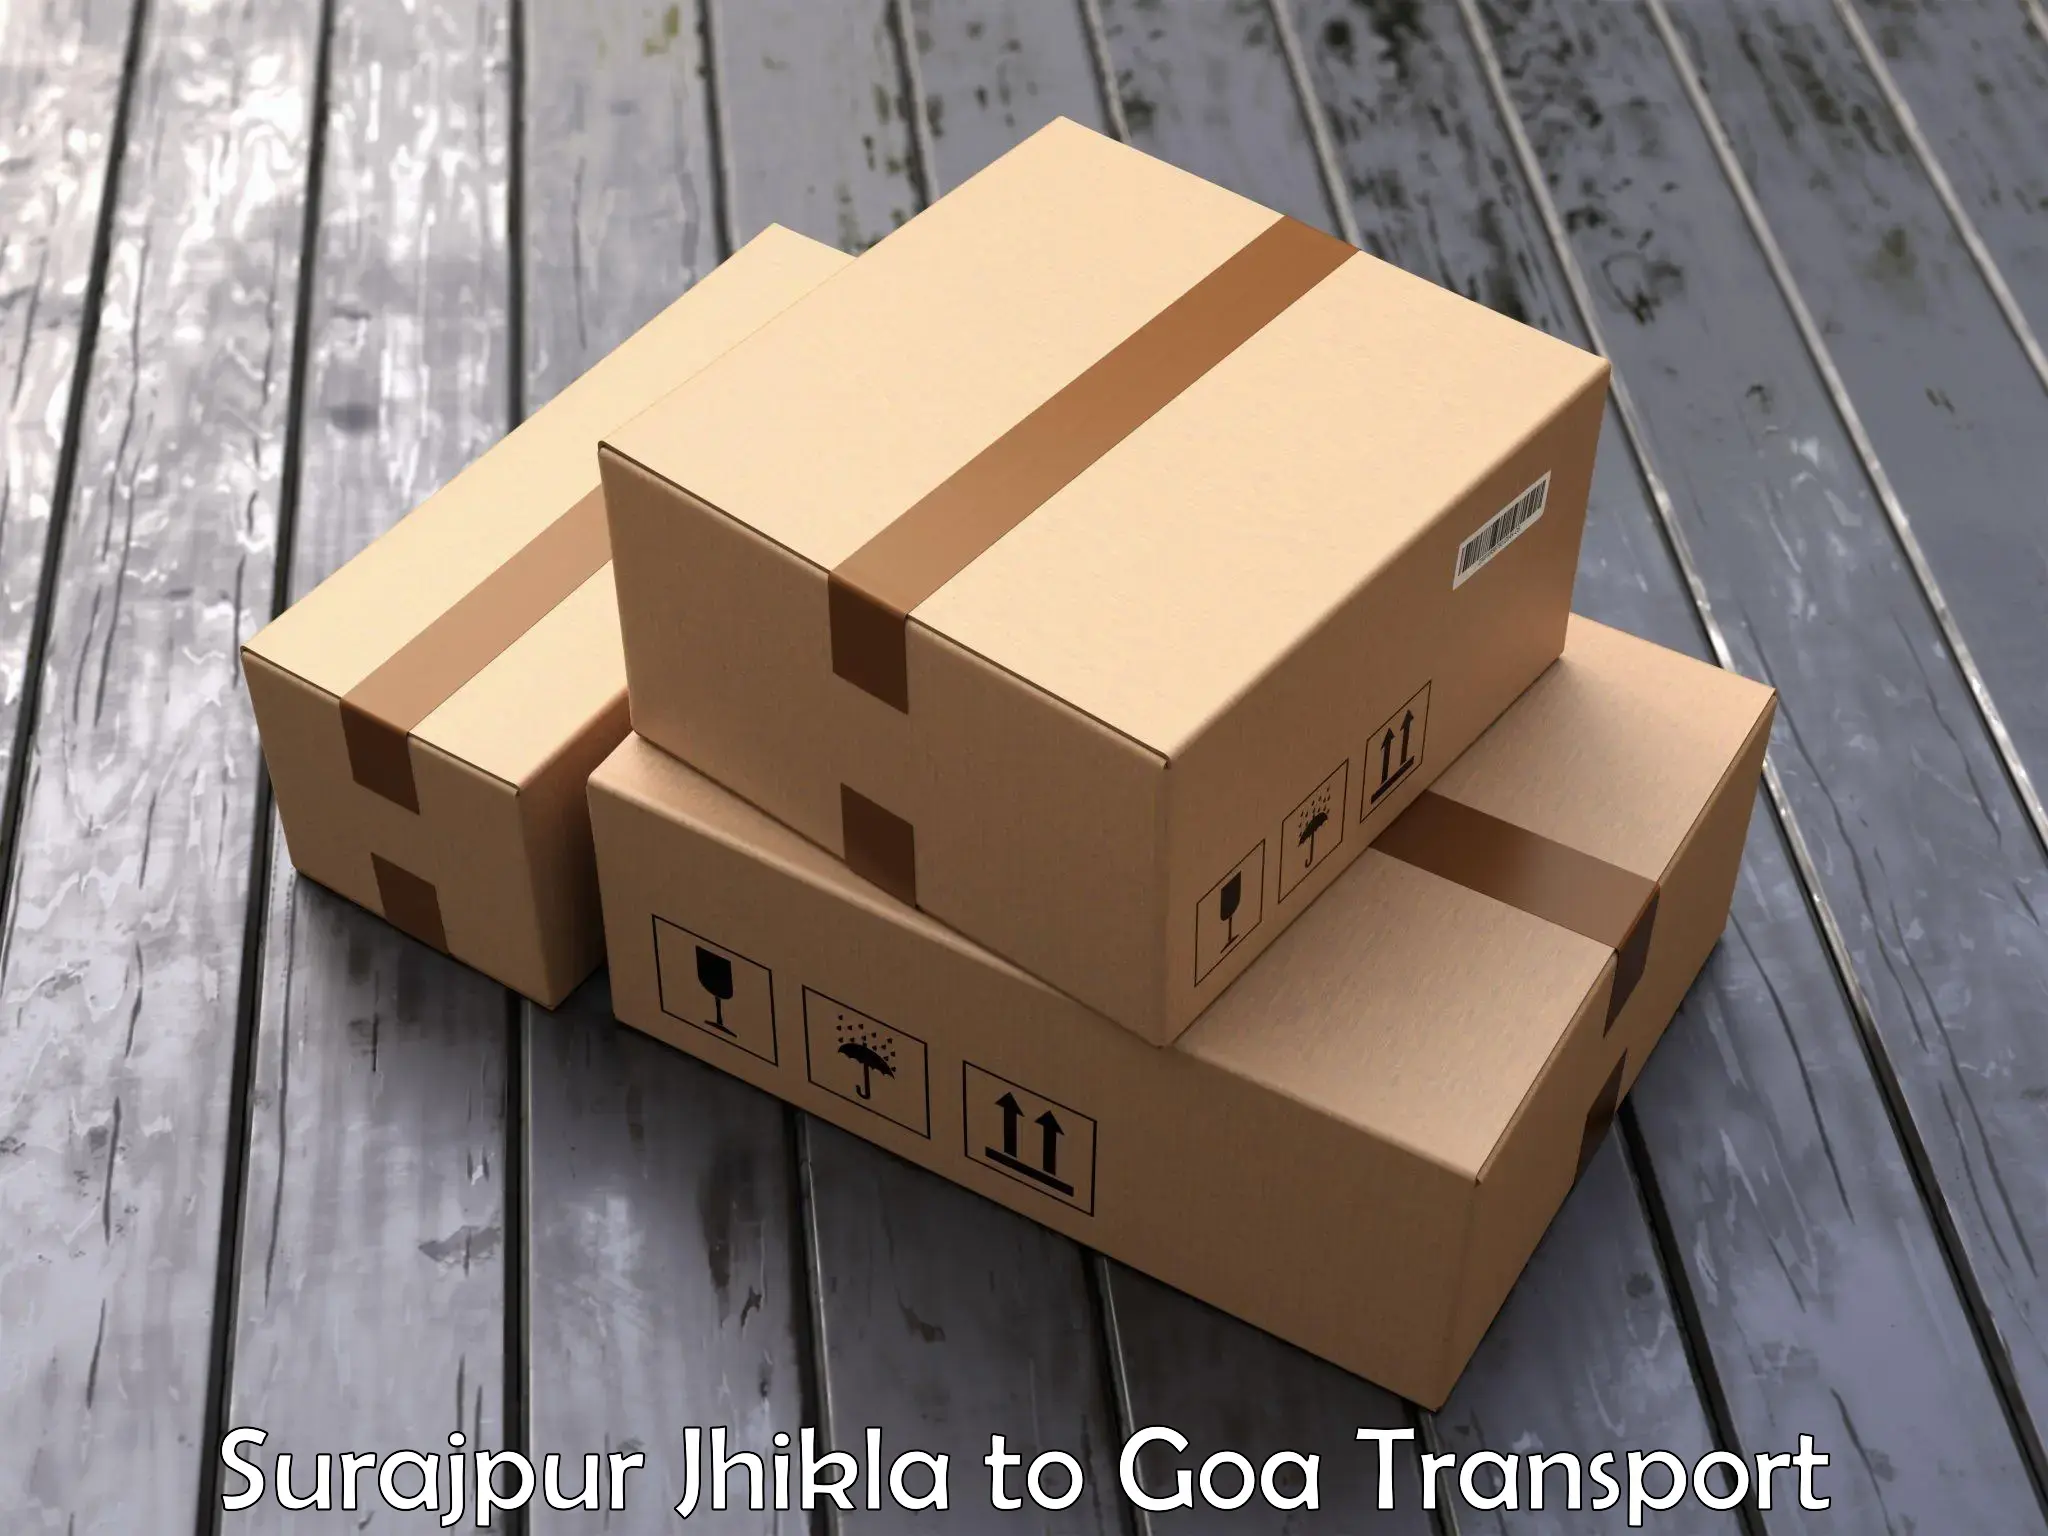 Goods delivery service Surajpur Jhikla to Ponda